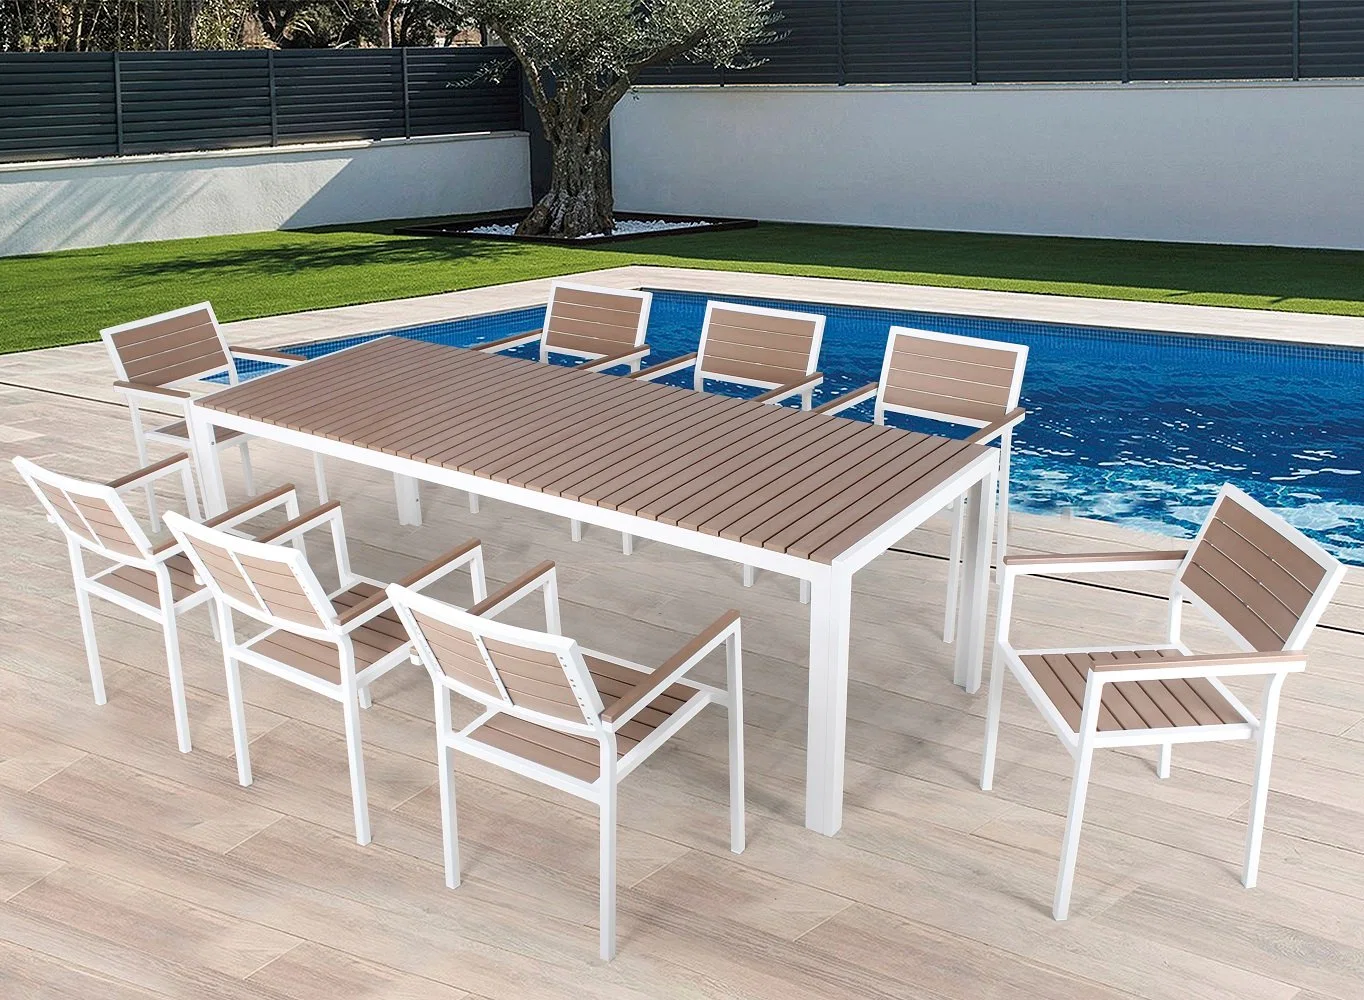 Heißer Verkauf Outdoor Garden Hotel Restaurant Aluminium Rahmen Kunststoff Holz Terrasse Esstisch Stuhl Möbel